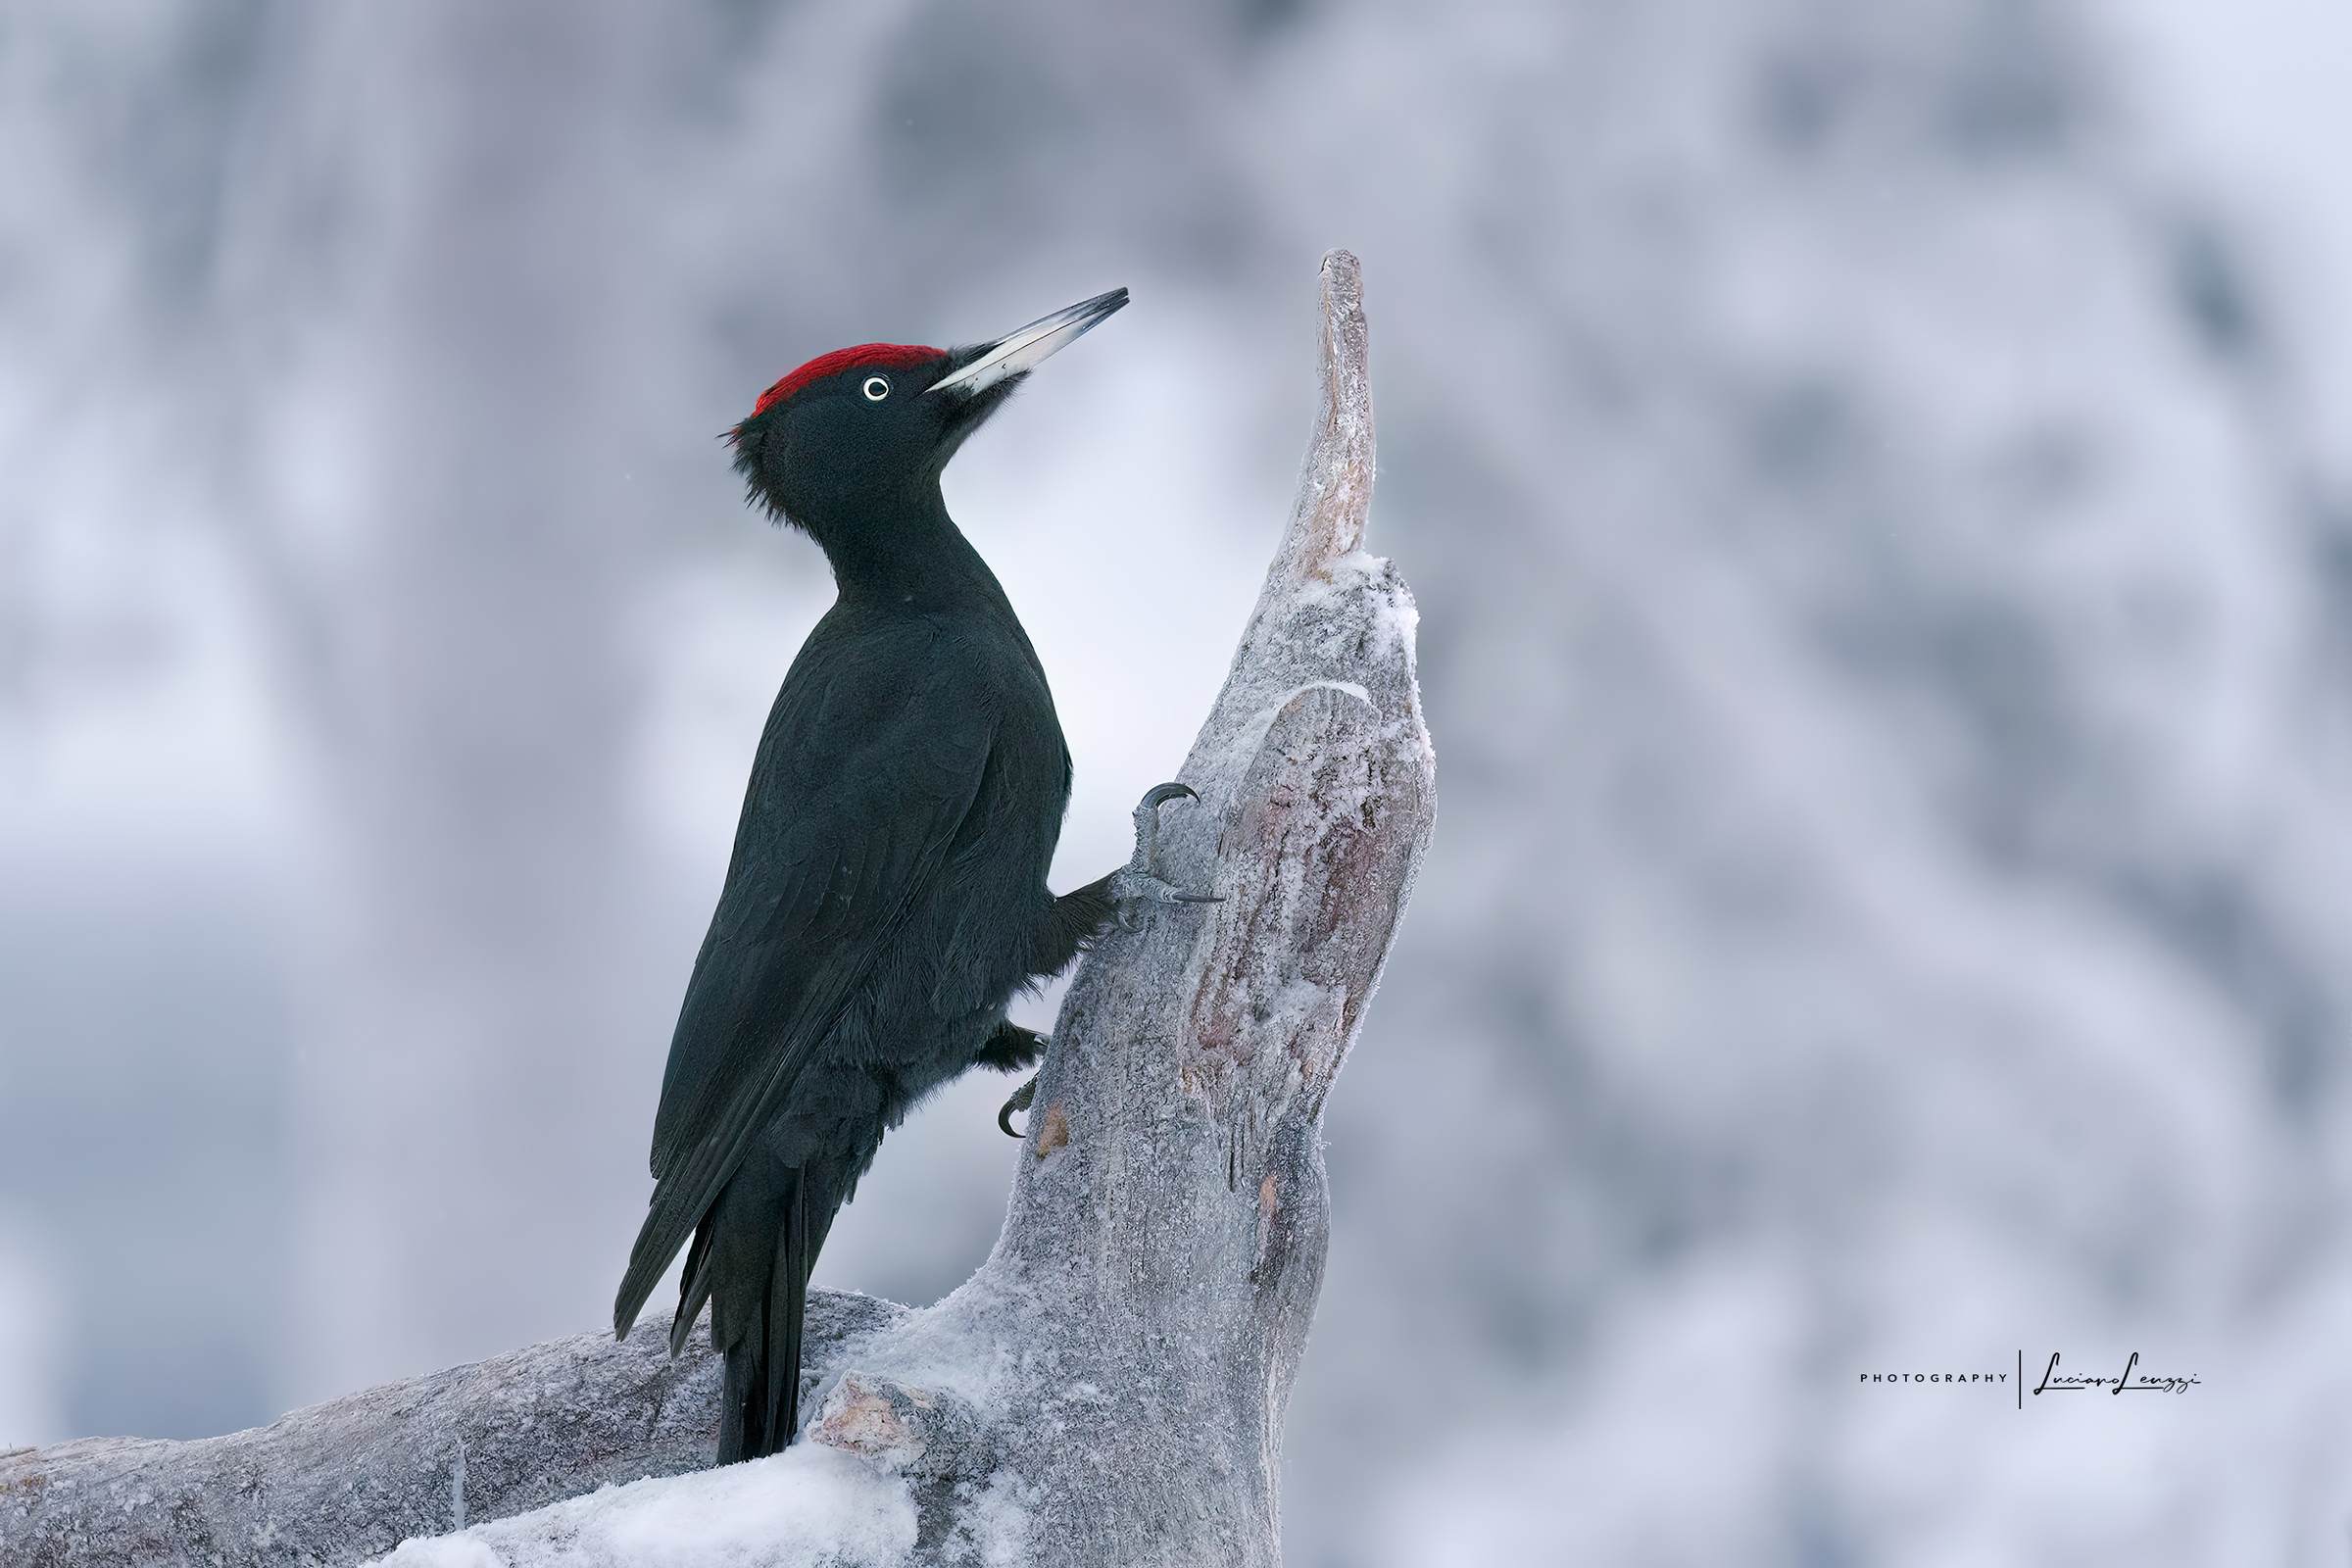 Black woodpecker on alert...